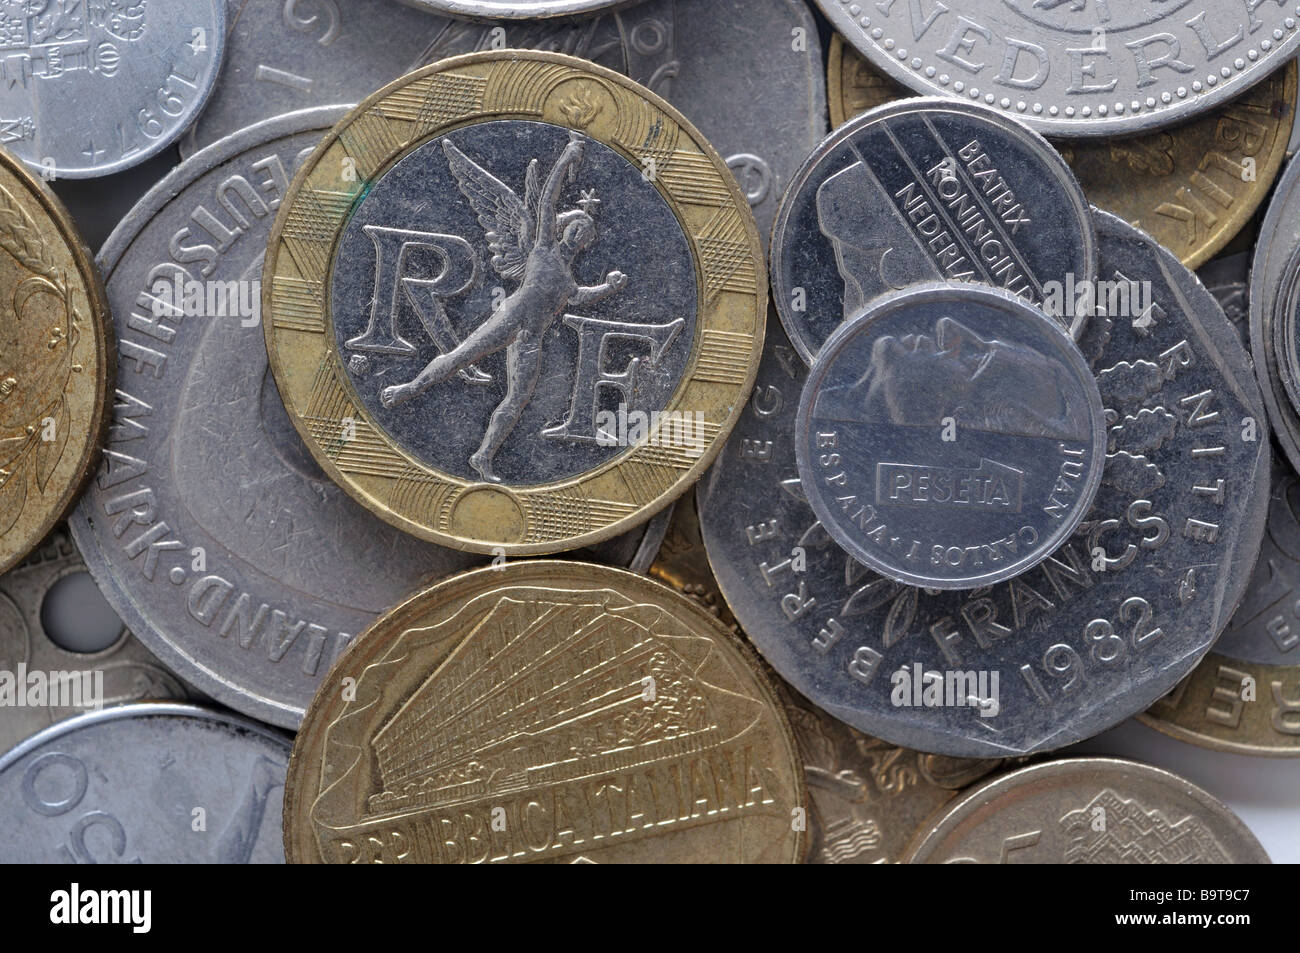 Mixed euopean coins Stock Photo